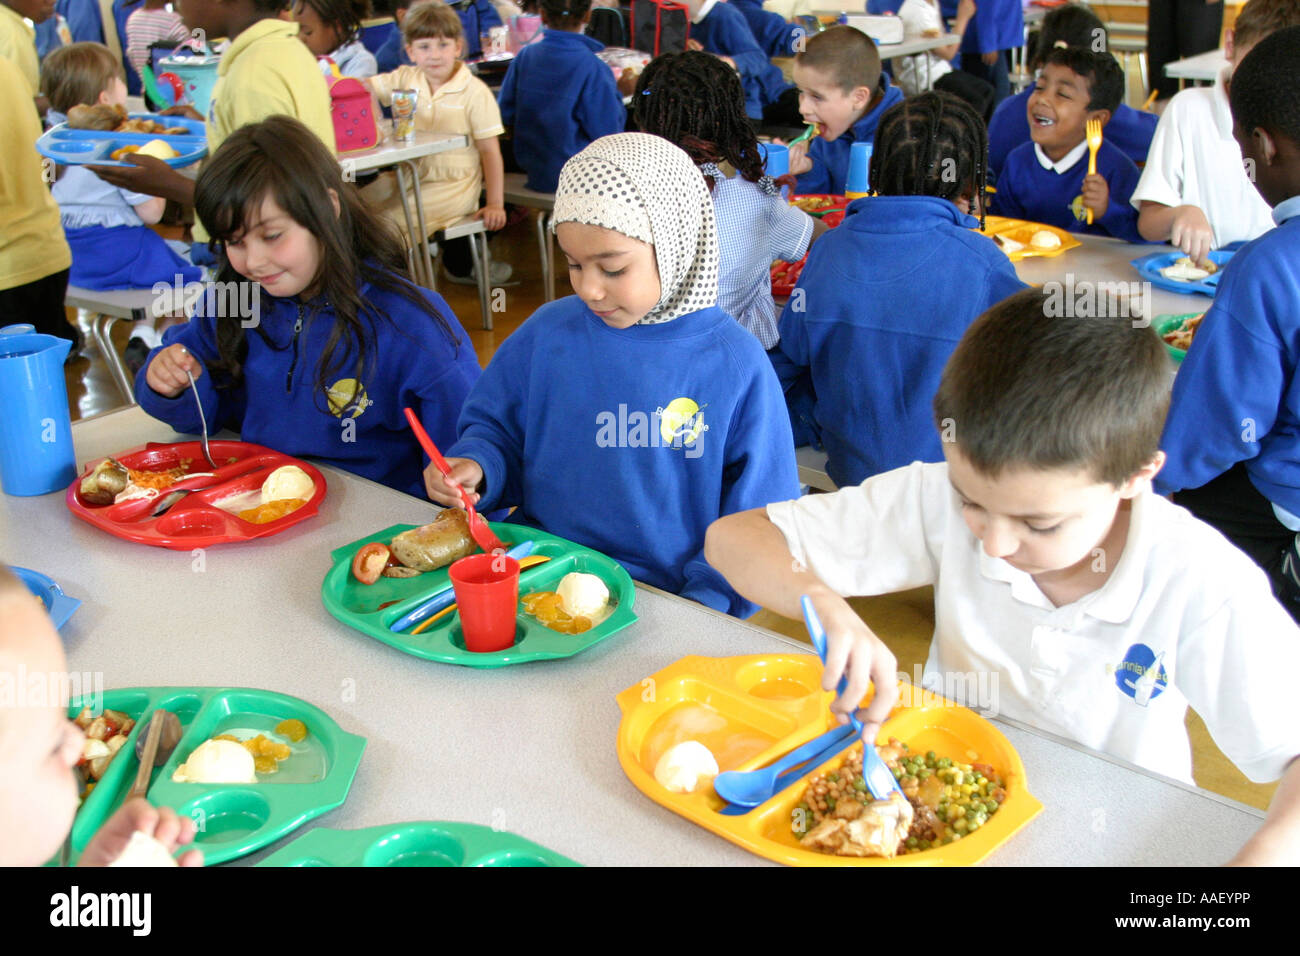 https://c8.alamy.com/comp/AAEYPP/primary-school-canteen-with-children-eating-lunch-AAEYPP.jpg